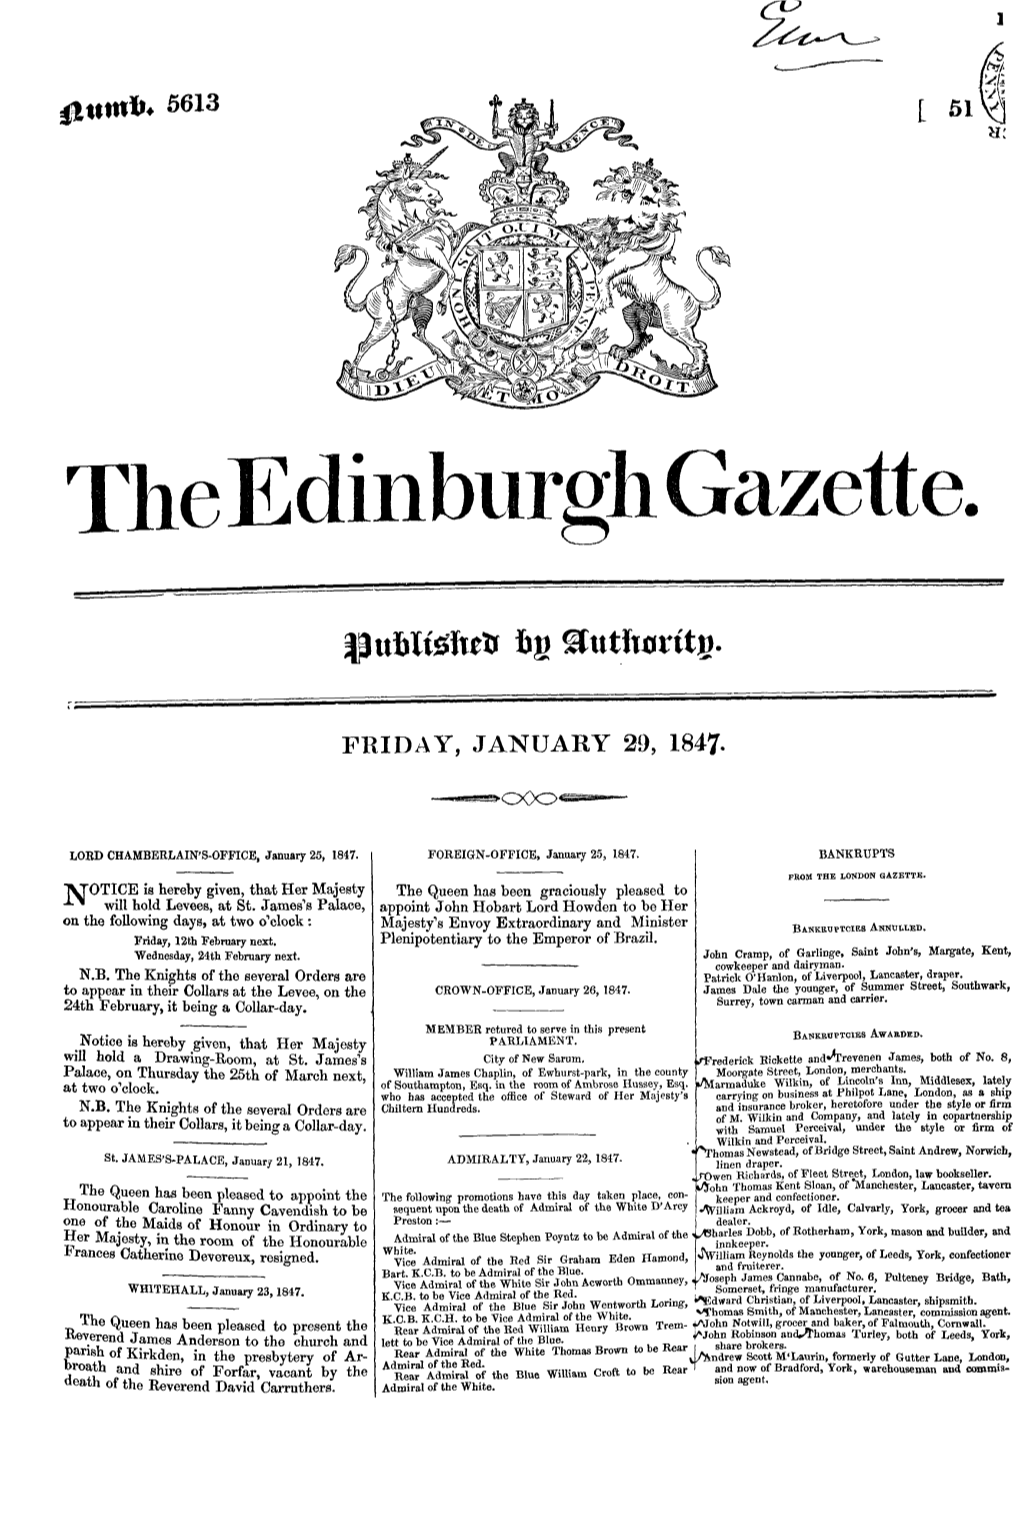 The E Dinburgh Gazette